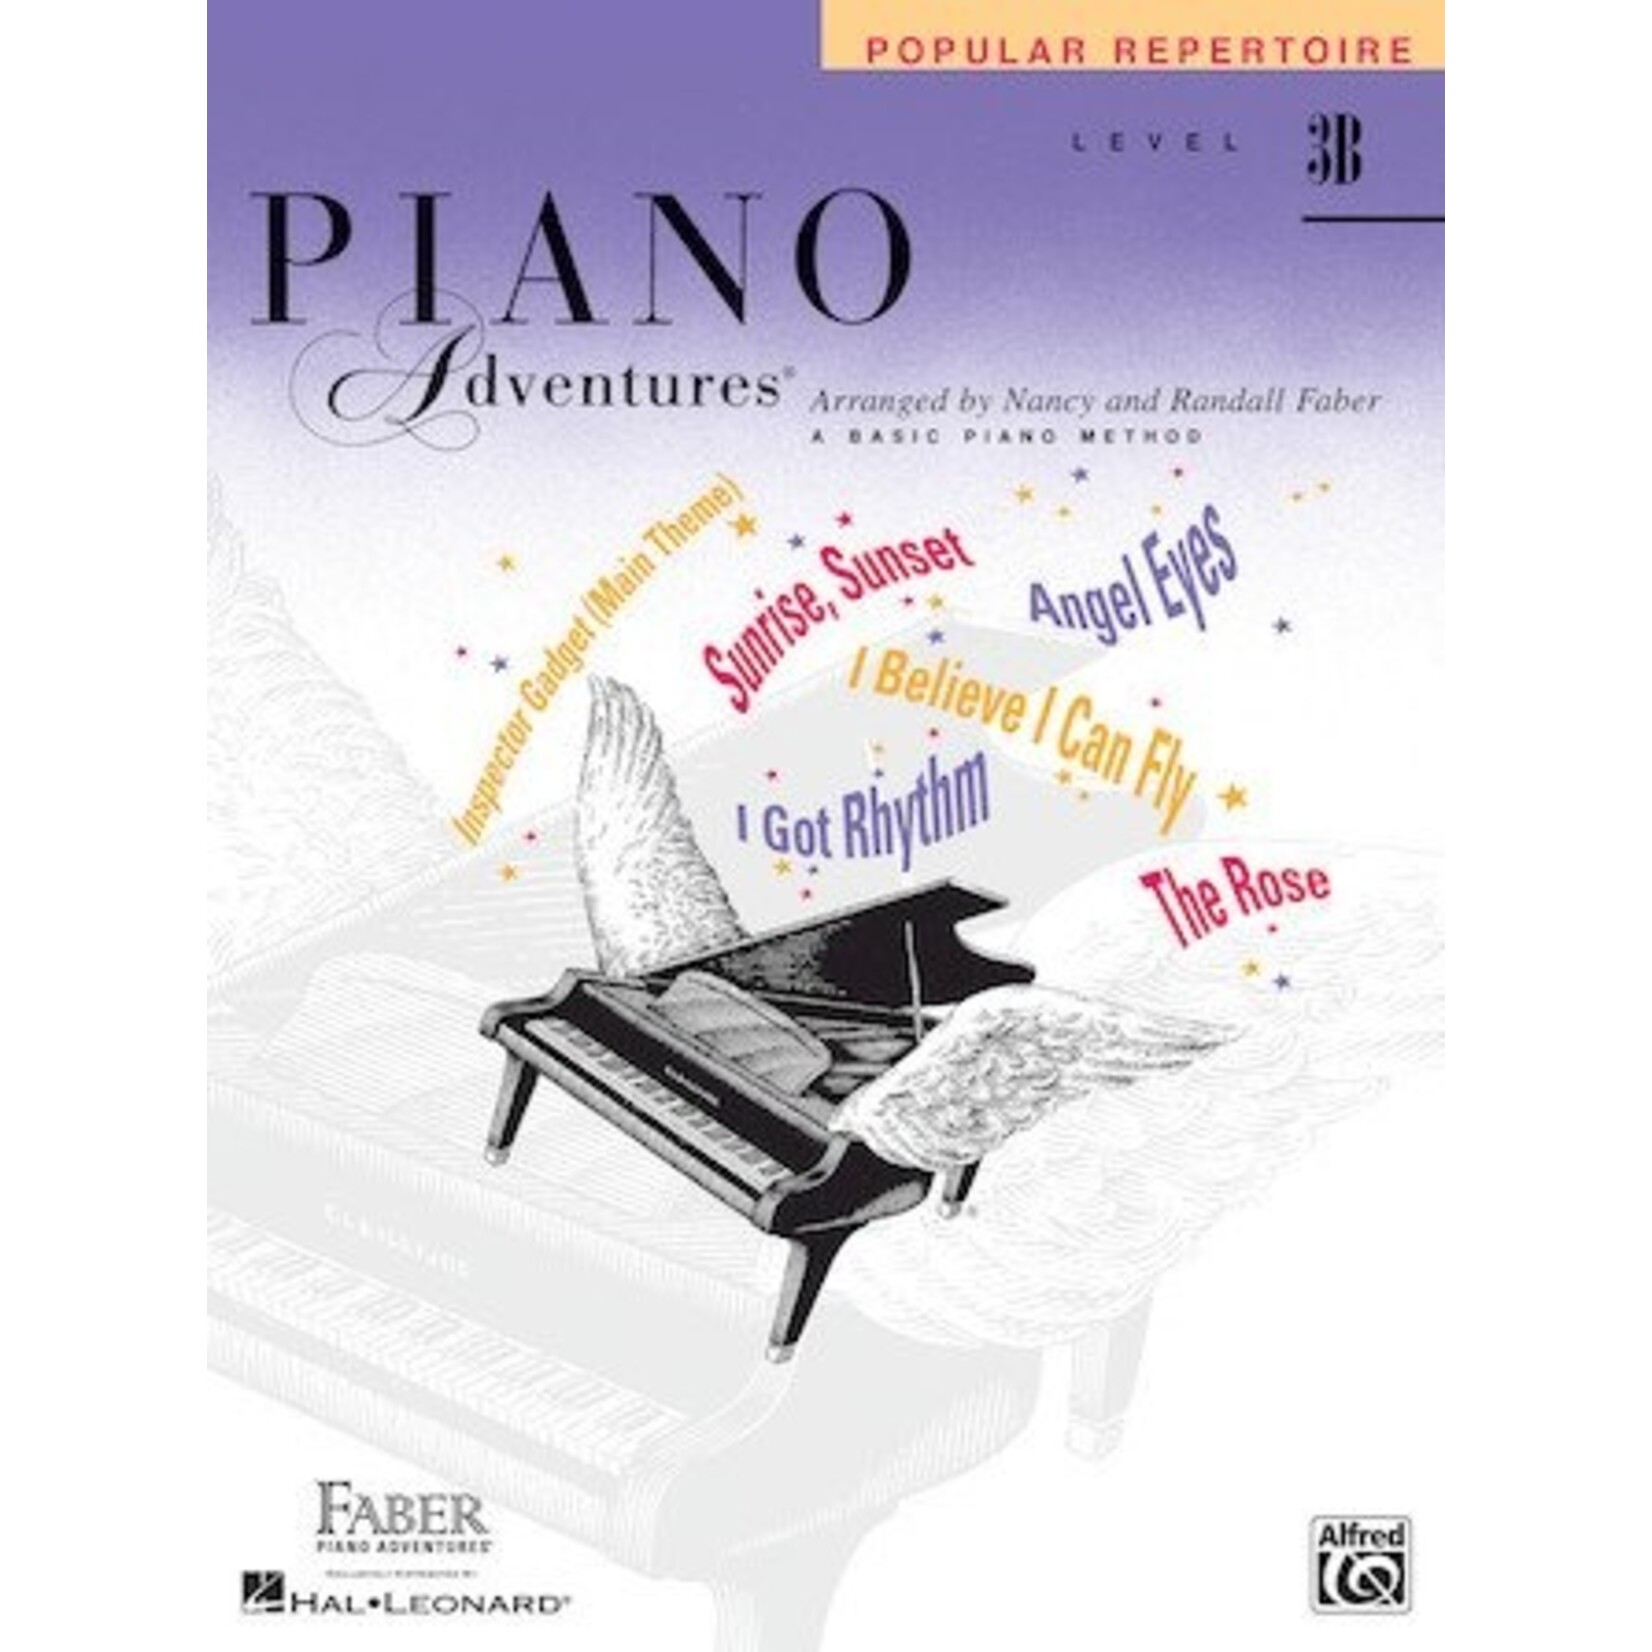 Faber Piano Adventures Level 3B - Popular Repertoire Book